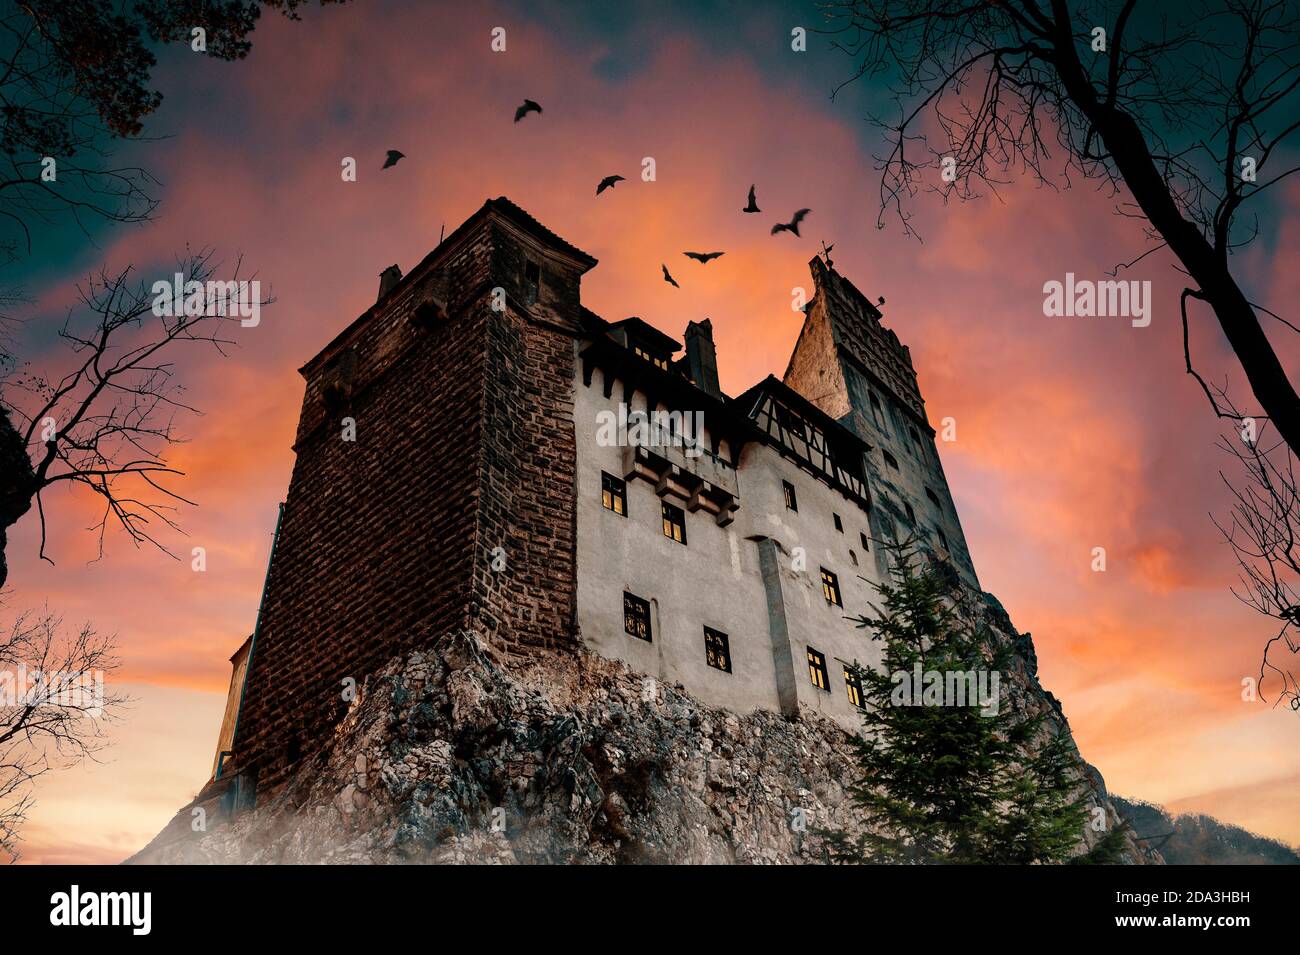 Bran Castle Museum (Dracula's Castle) mit Fledermäuse, in der Nähe von Brasov, Siebenbürgen, Rumänien. Bekannt als das Schloss von Dracula. Gruseliges Äußeres bei Sonnenuntergang Stockfoto